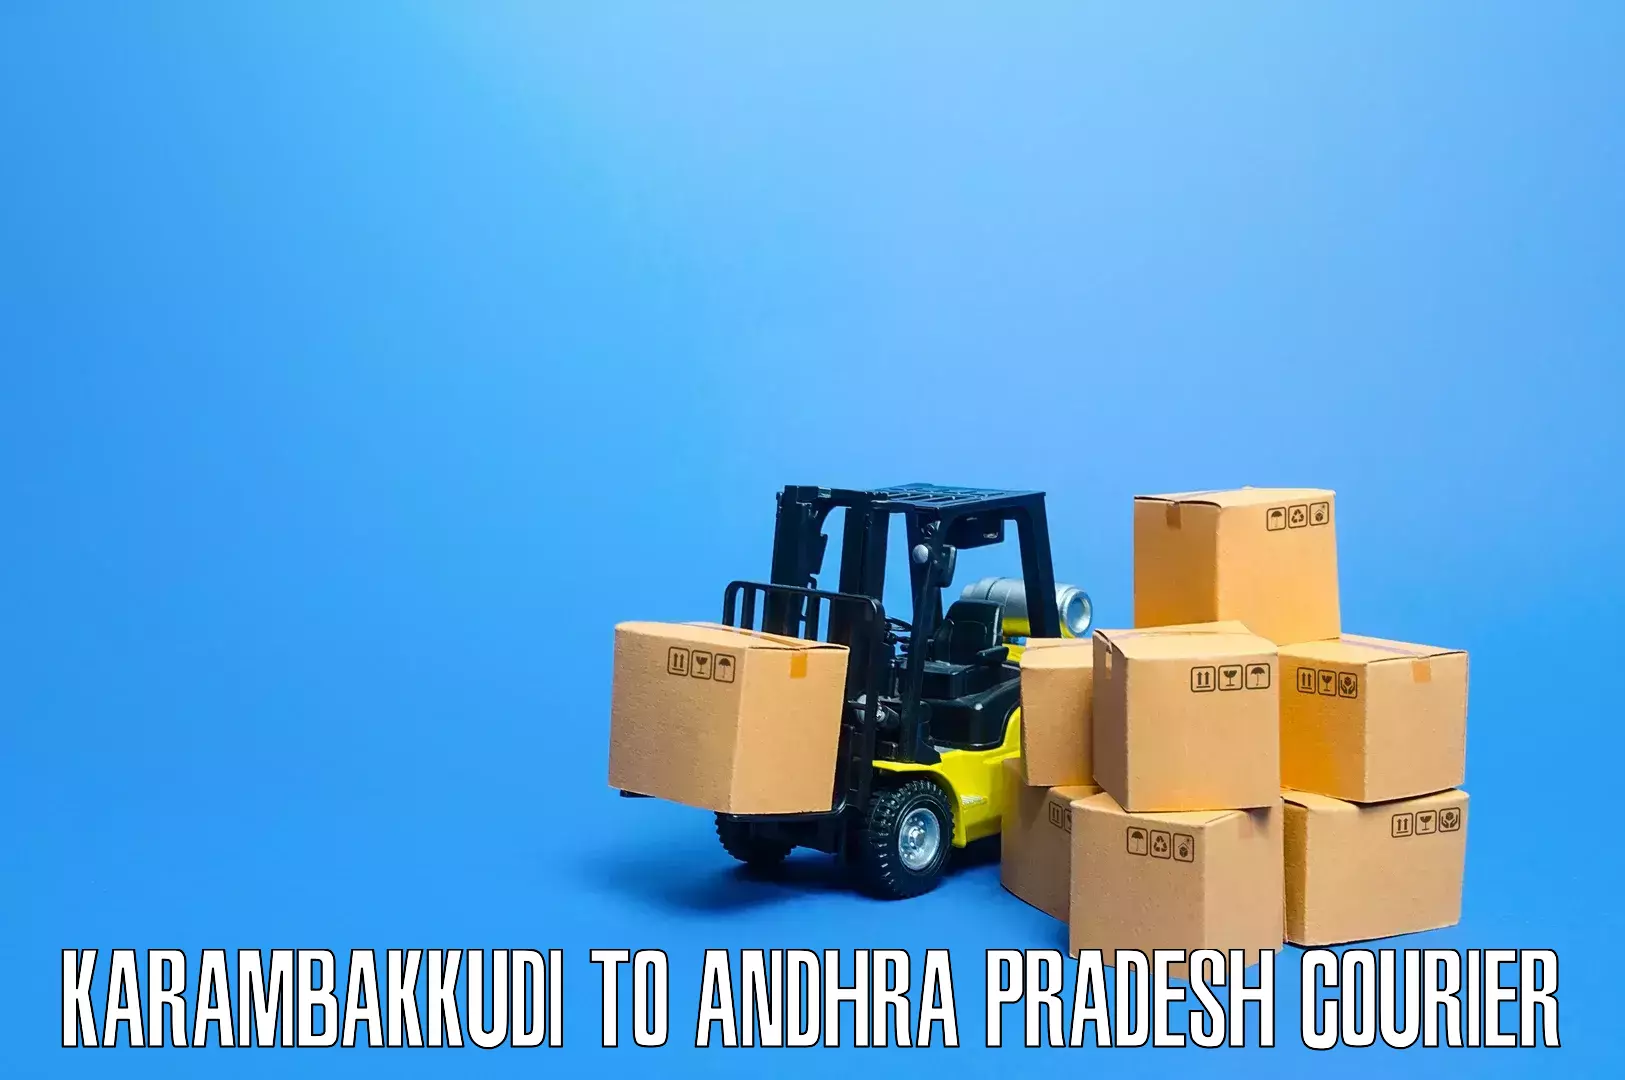 Efficient moving and packing Karambakkudi to Amalapuram